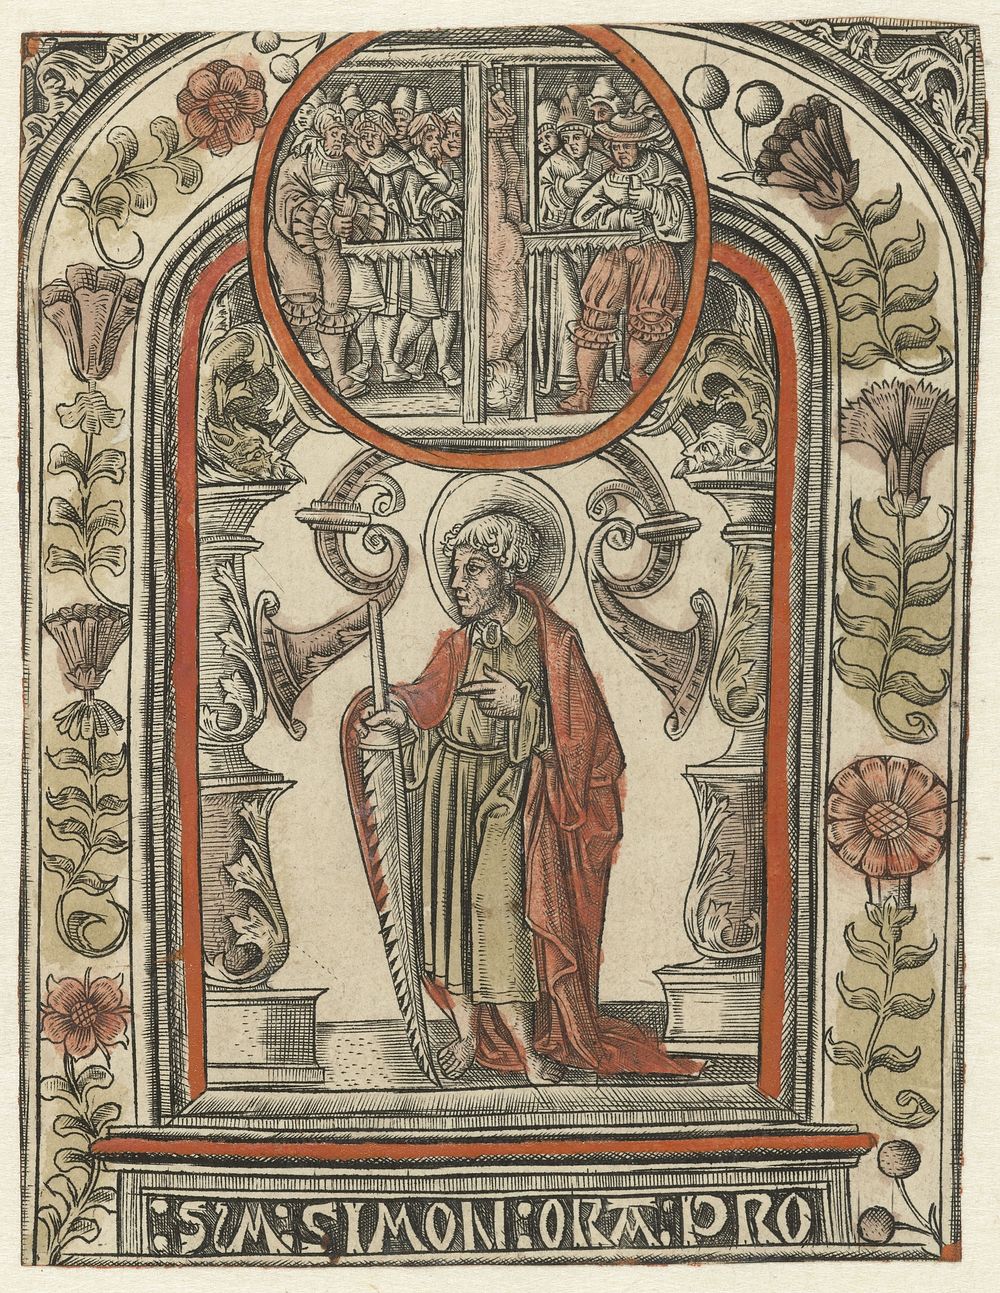 De apostel Simon en zijn martelaarschap (c. 1510 - c. 1530) by Allaert Claesz and Monogrammist S 16e eeuw